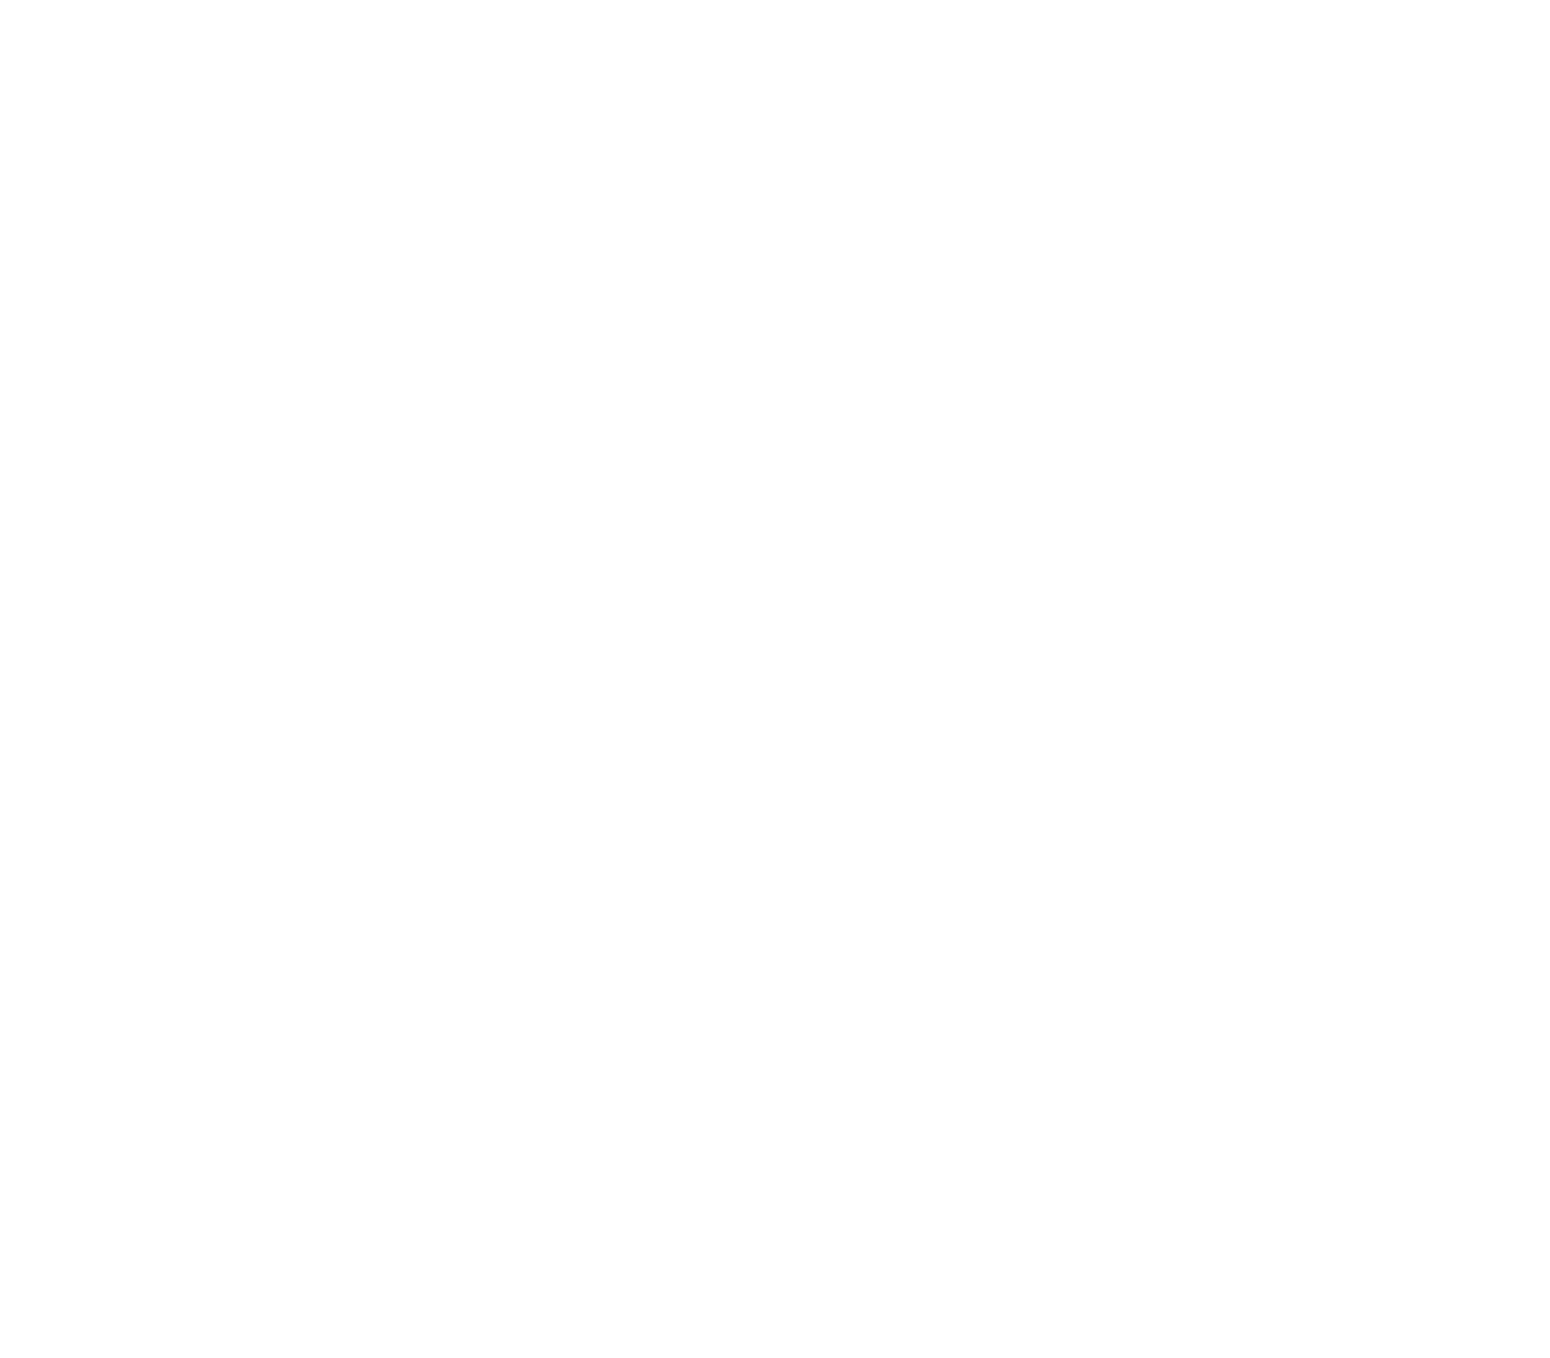 dLocal logo pour fonds sombres (PNG transparent)